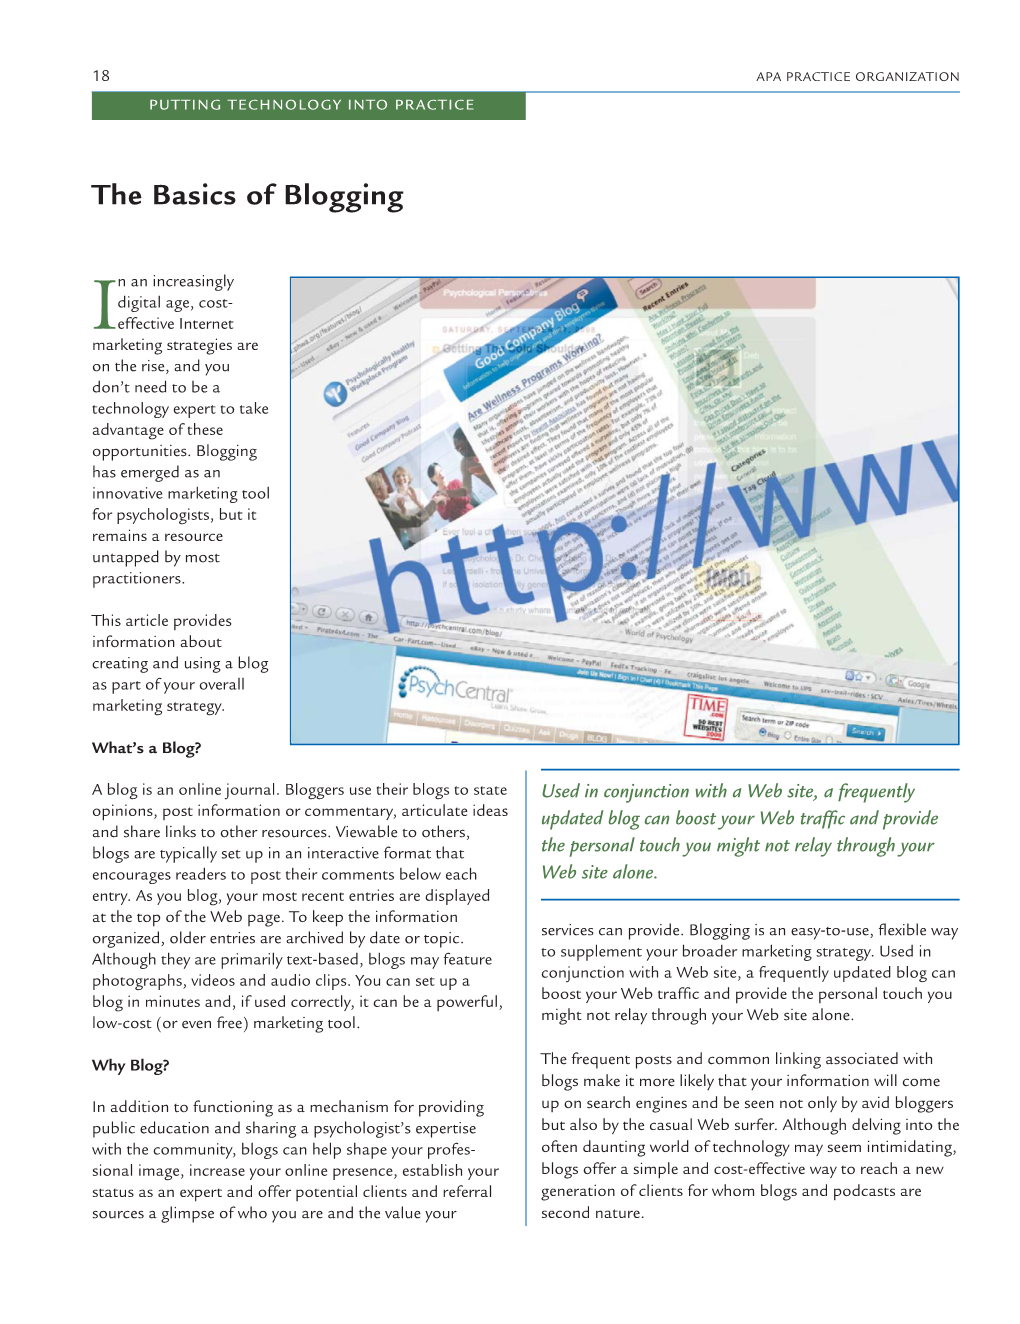 The Basics of Blogging